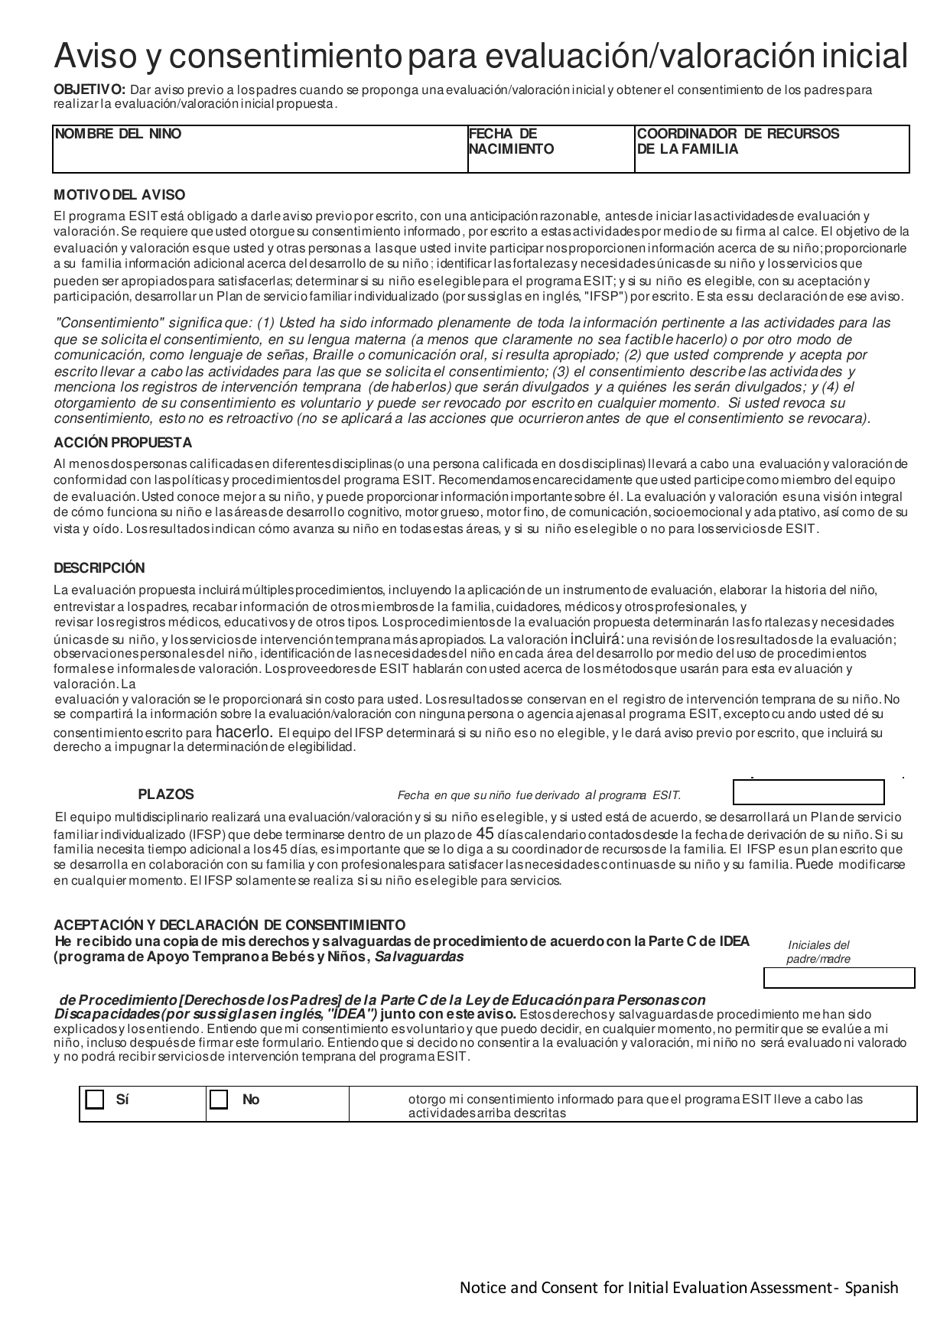 DCYF Formulario 15-056 Aviso Y Consentimiento Para Evaluacion/Valoracion Inicial - Washington (Spanish), Page 1